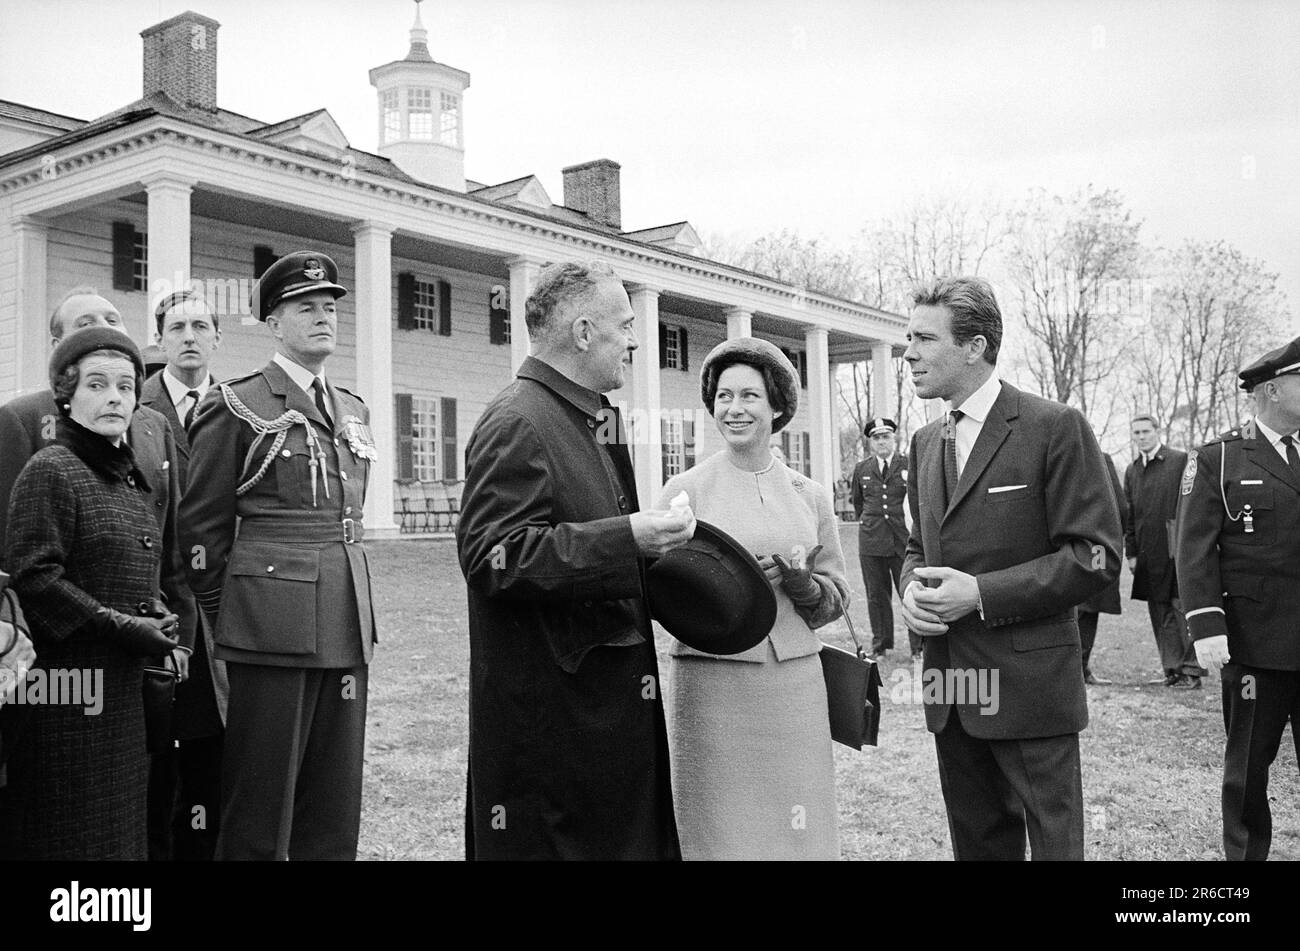 La principessa Margaret e Lord Snowdon visitano Mount Vernon, Virginia, Stati Uniti, Warren K. Leffler, Stati Uniti News & World Report Magazine Photograph Collection, 16 novembre 1965 Foto Stock